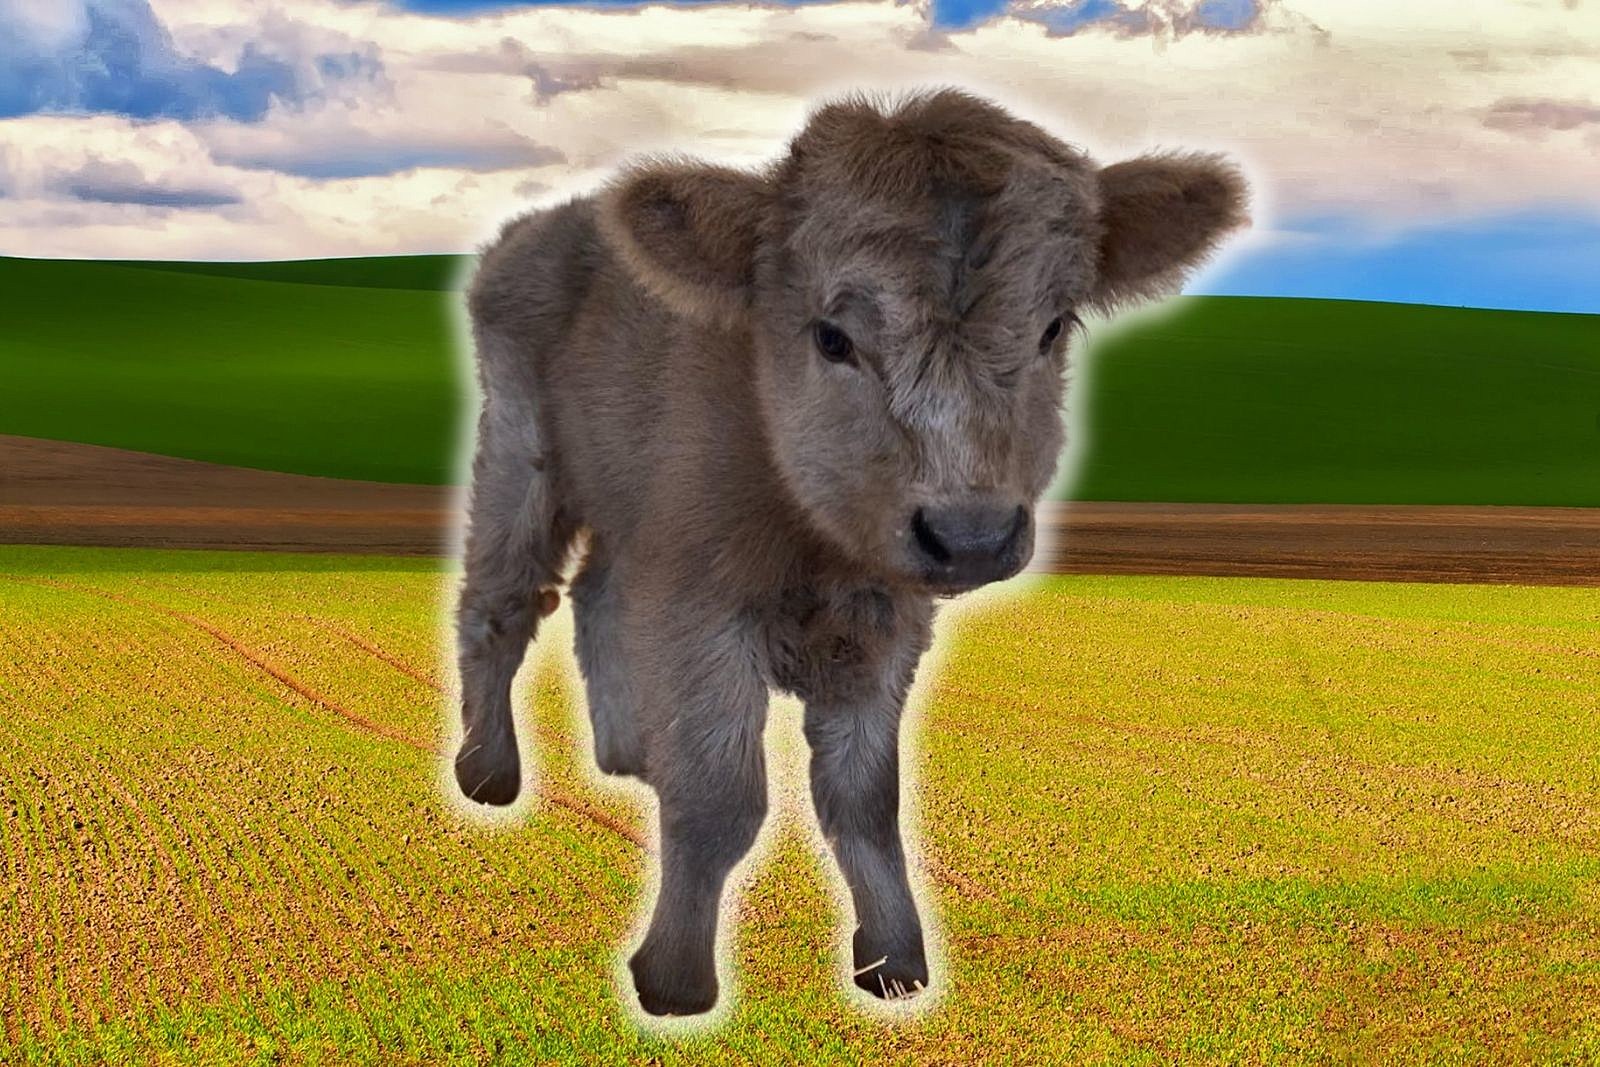 mini cows